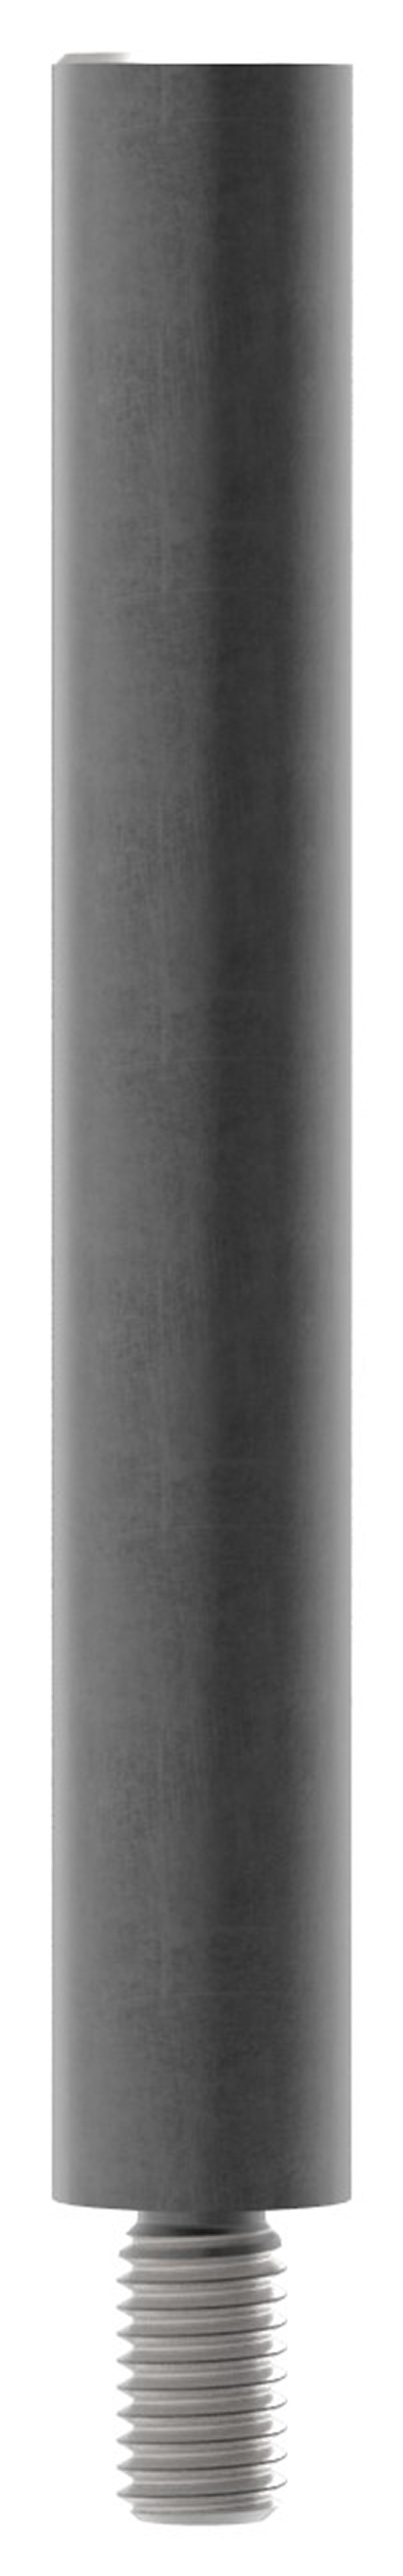 Stahlstift | mit Gewinde M8 | Maße: 100x14 mm | Stahl (Roh) S235JR